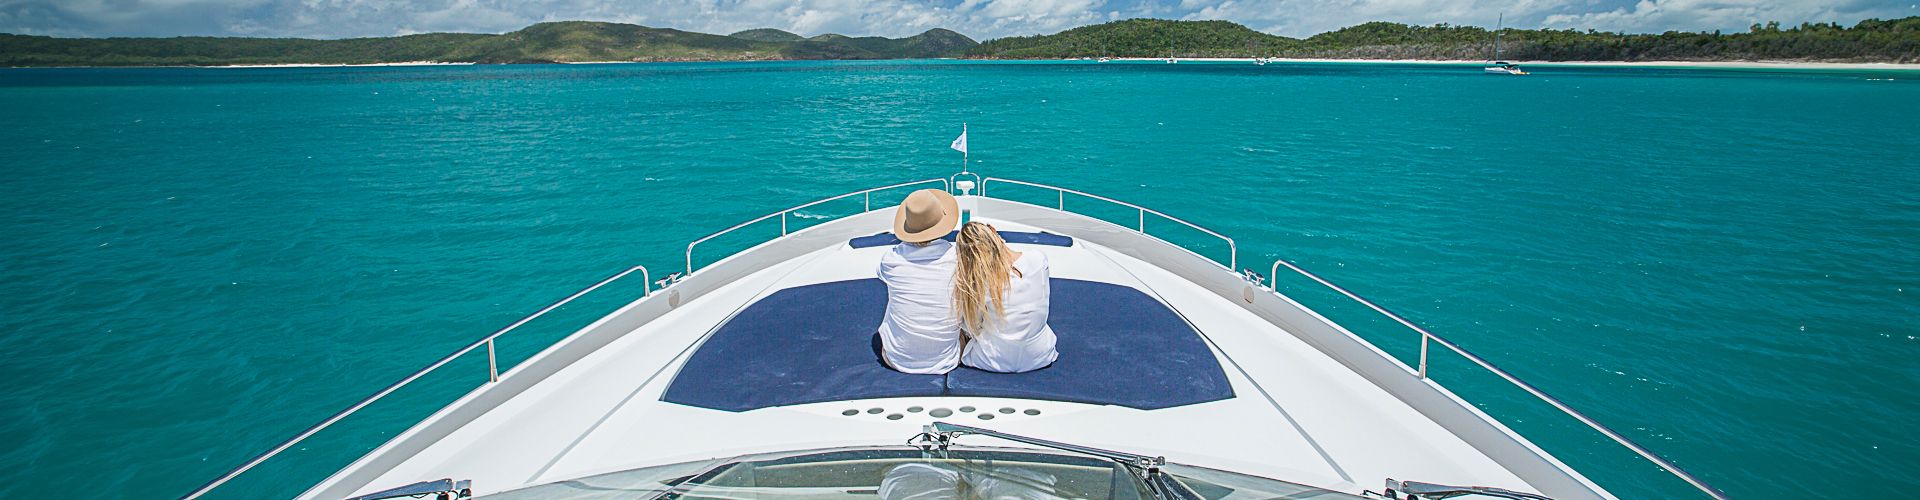 Whitsundays Luxury & Superyacht Overnight Charters - Sailing Whitsunday Image